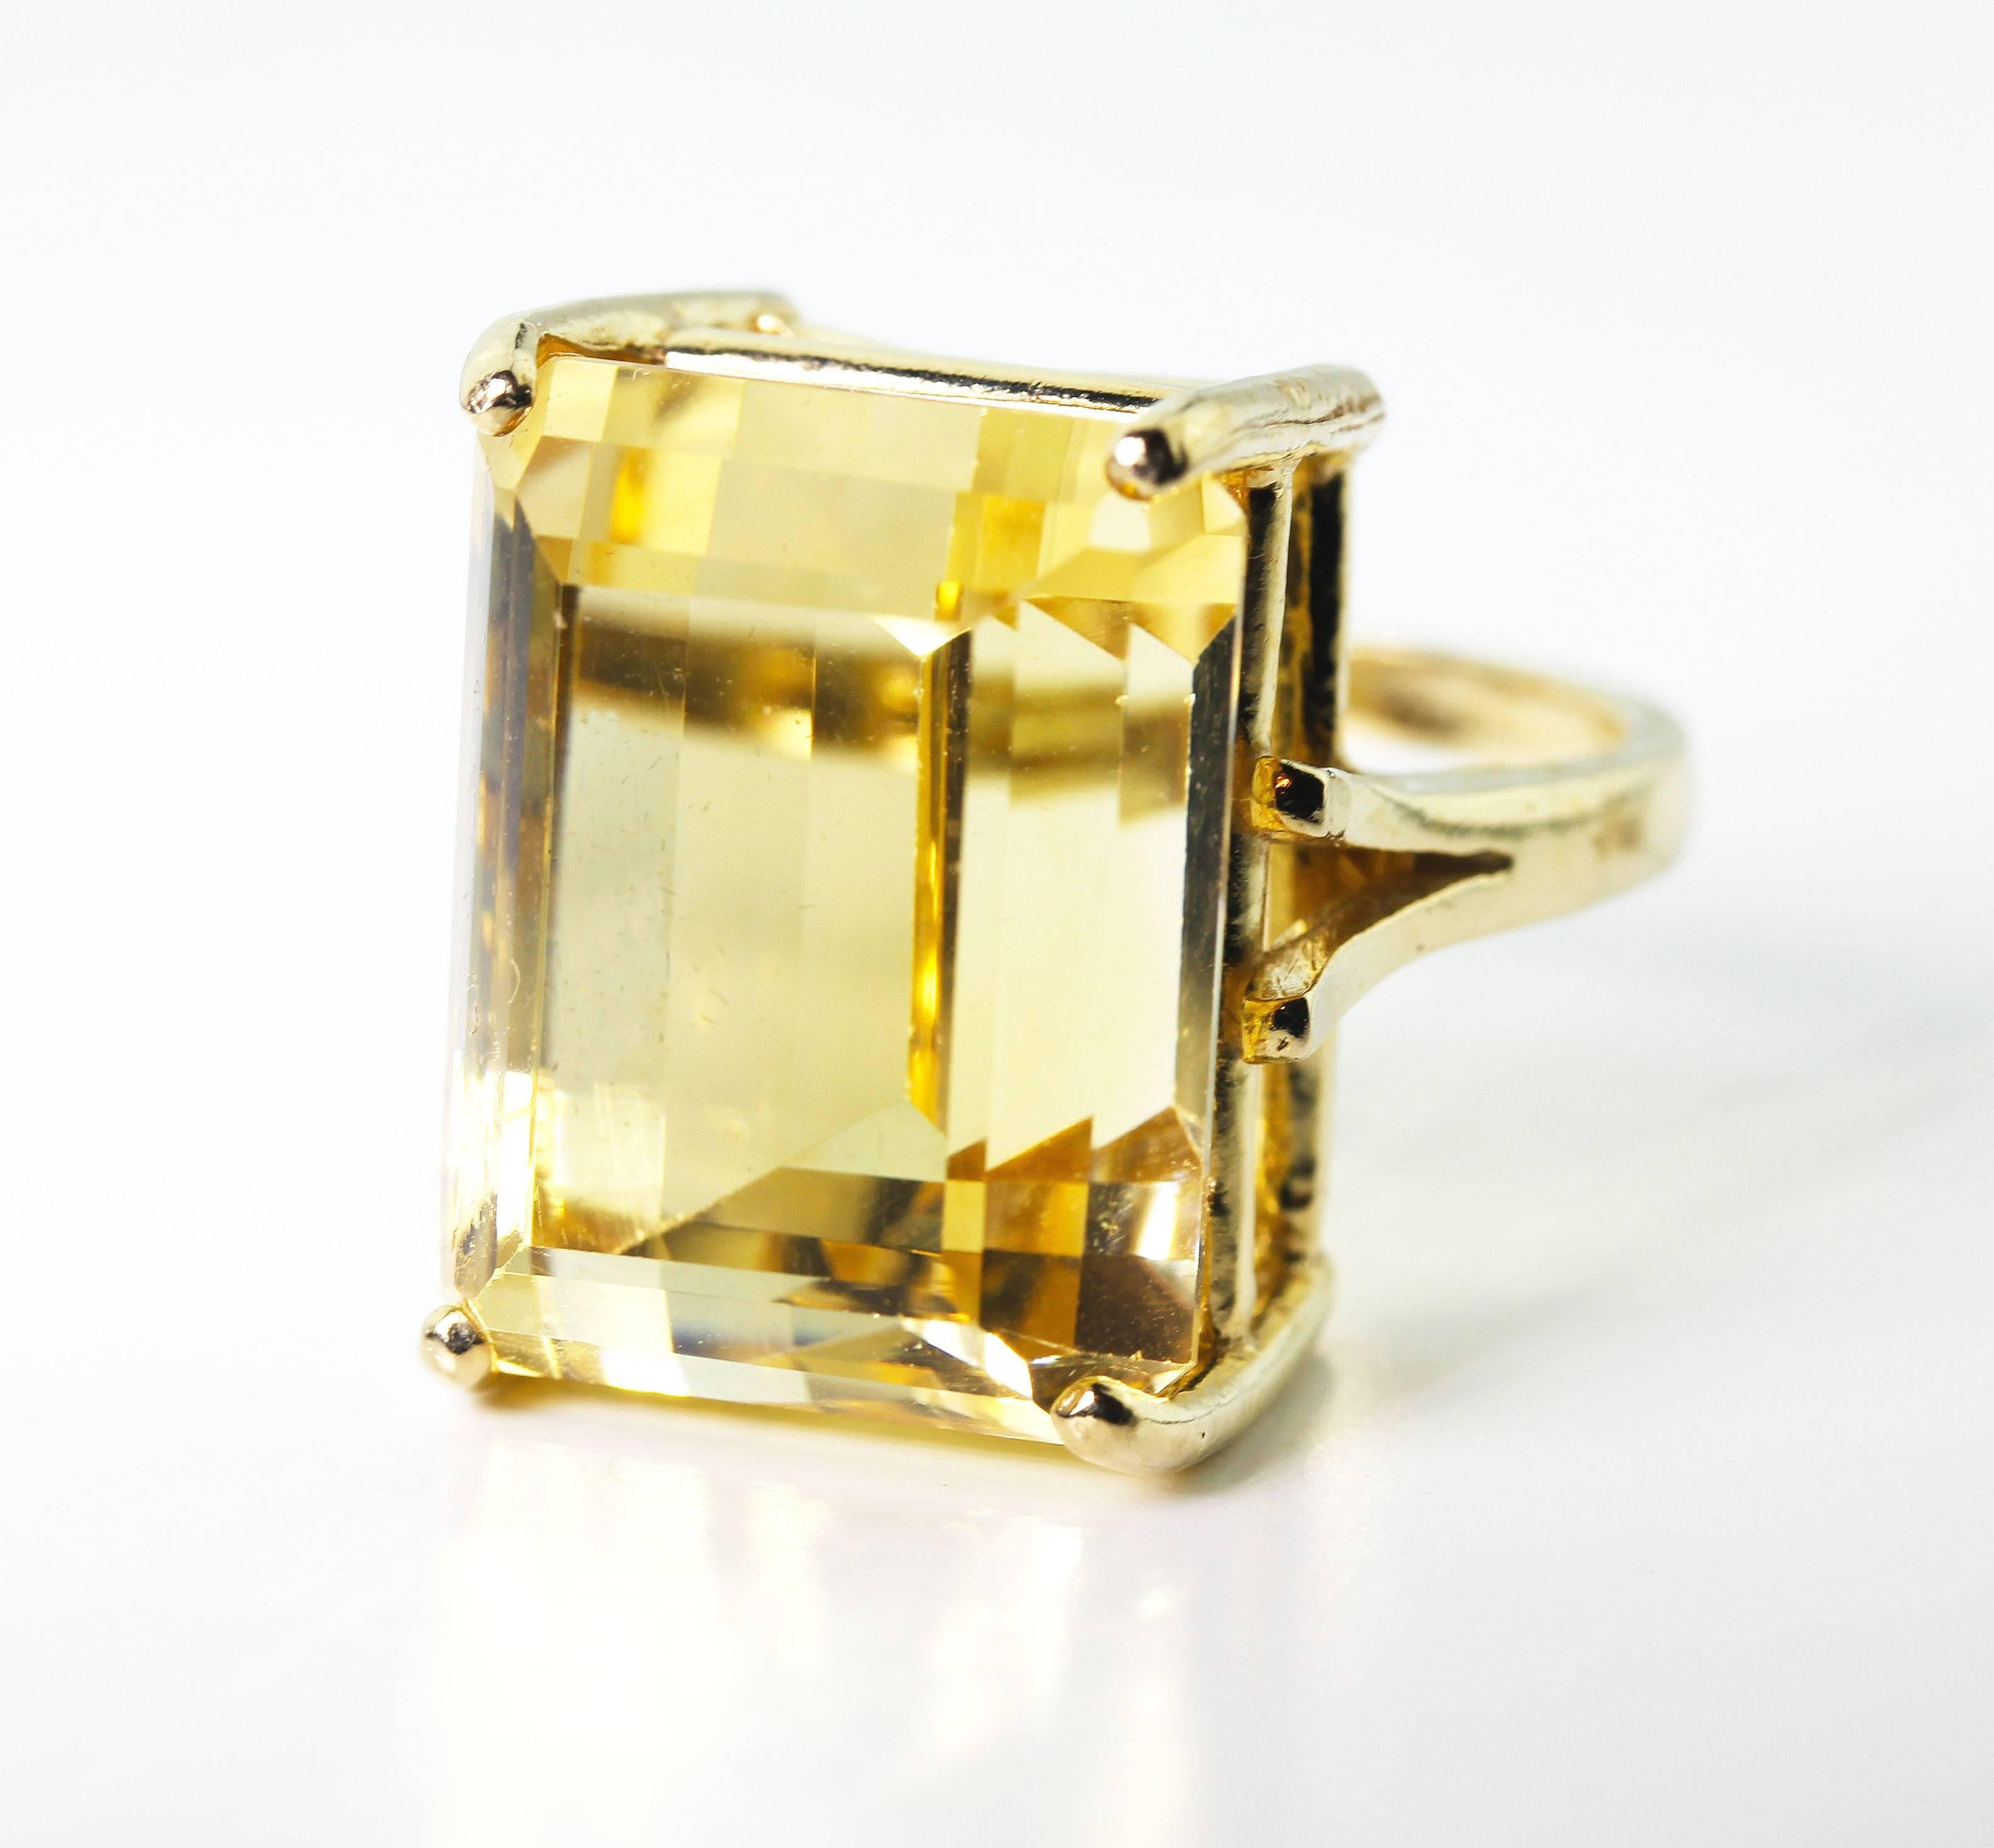 27 carat gold ring